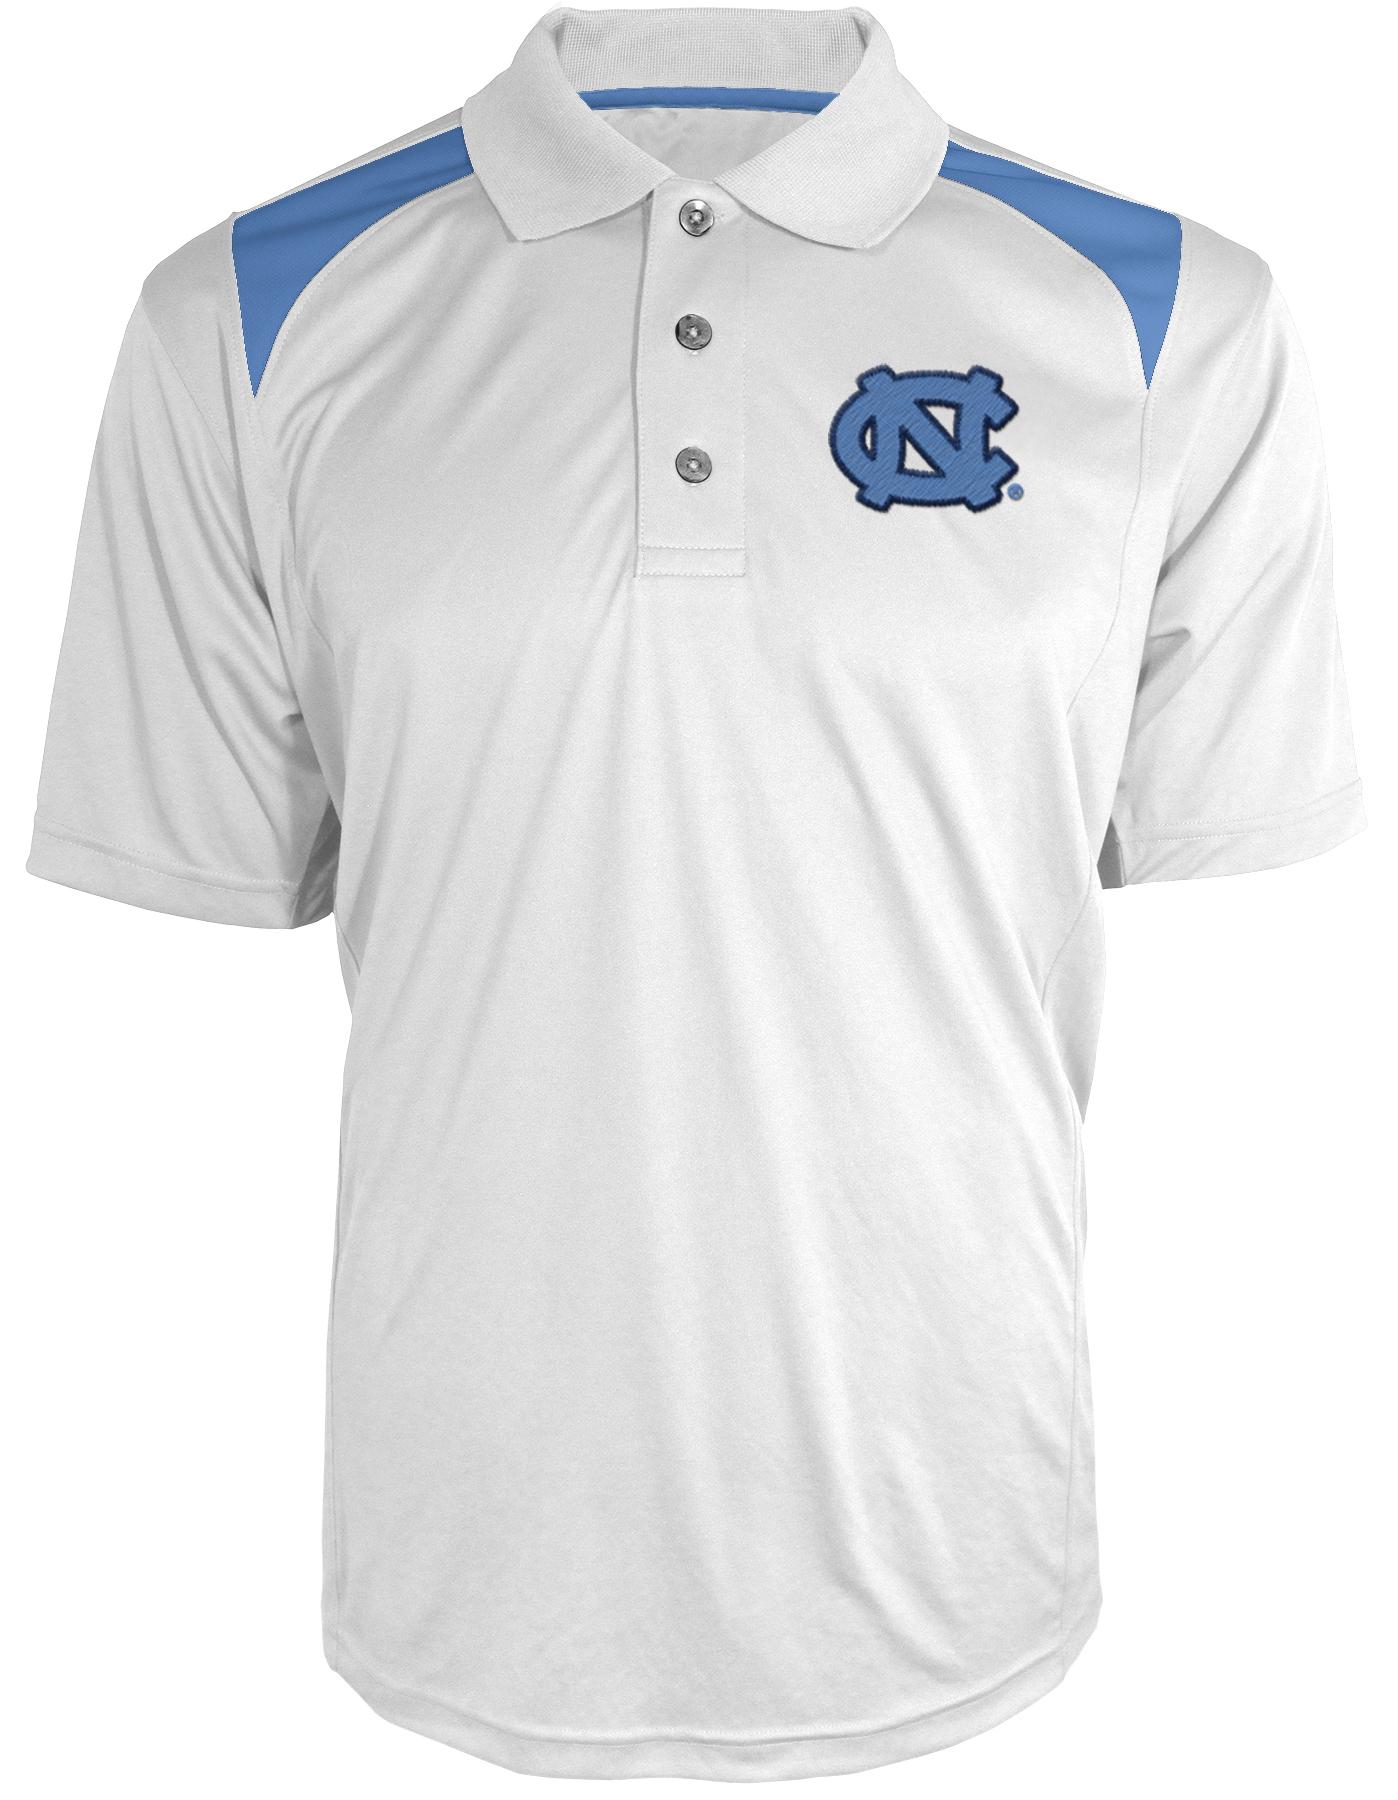 NCAA Men's Polo Shirt - University of North Carolina